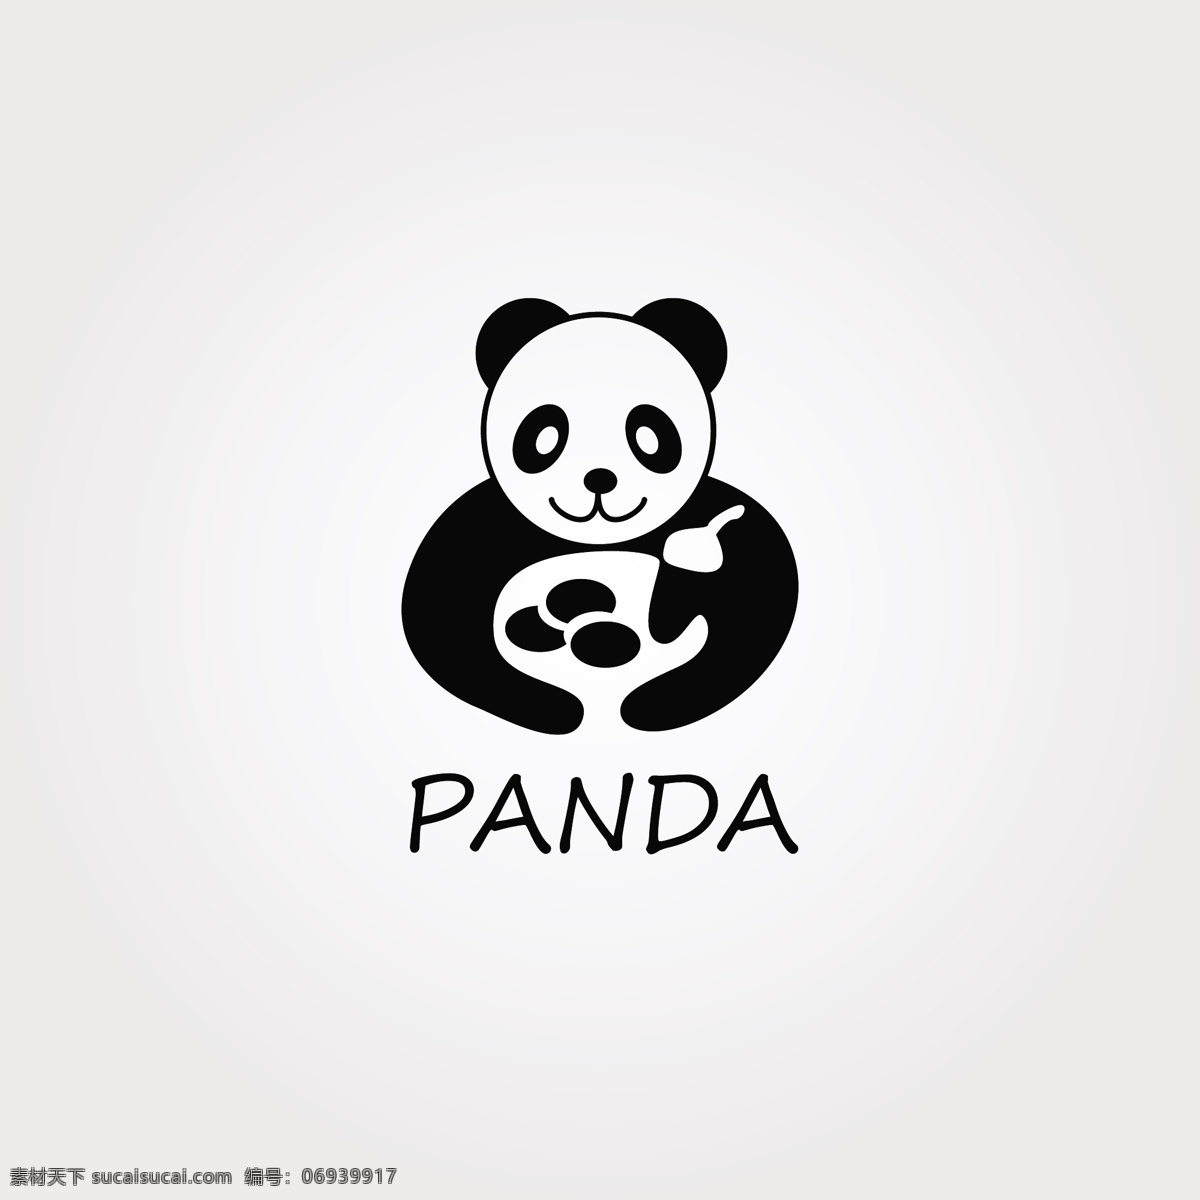 可爱 大熊猫 logo 矢量 动物logo 动物园 创意logo 行业logo 保护 协会 标志设计 logo设计